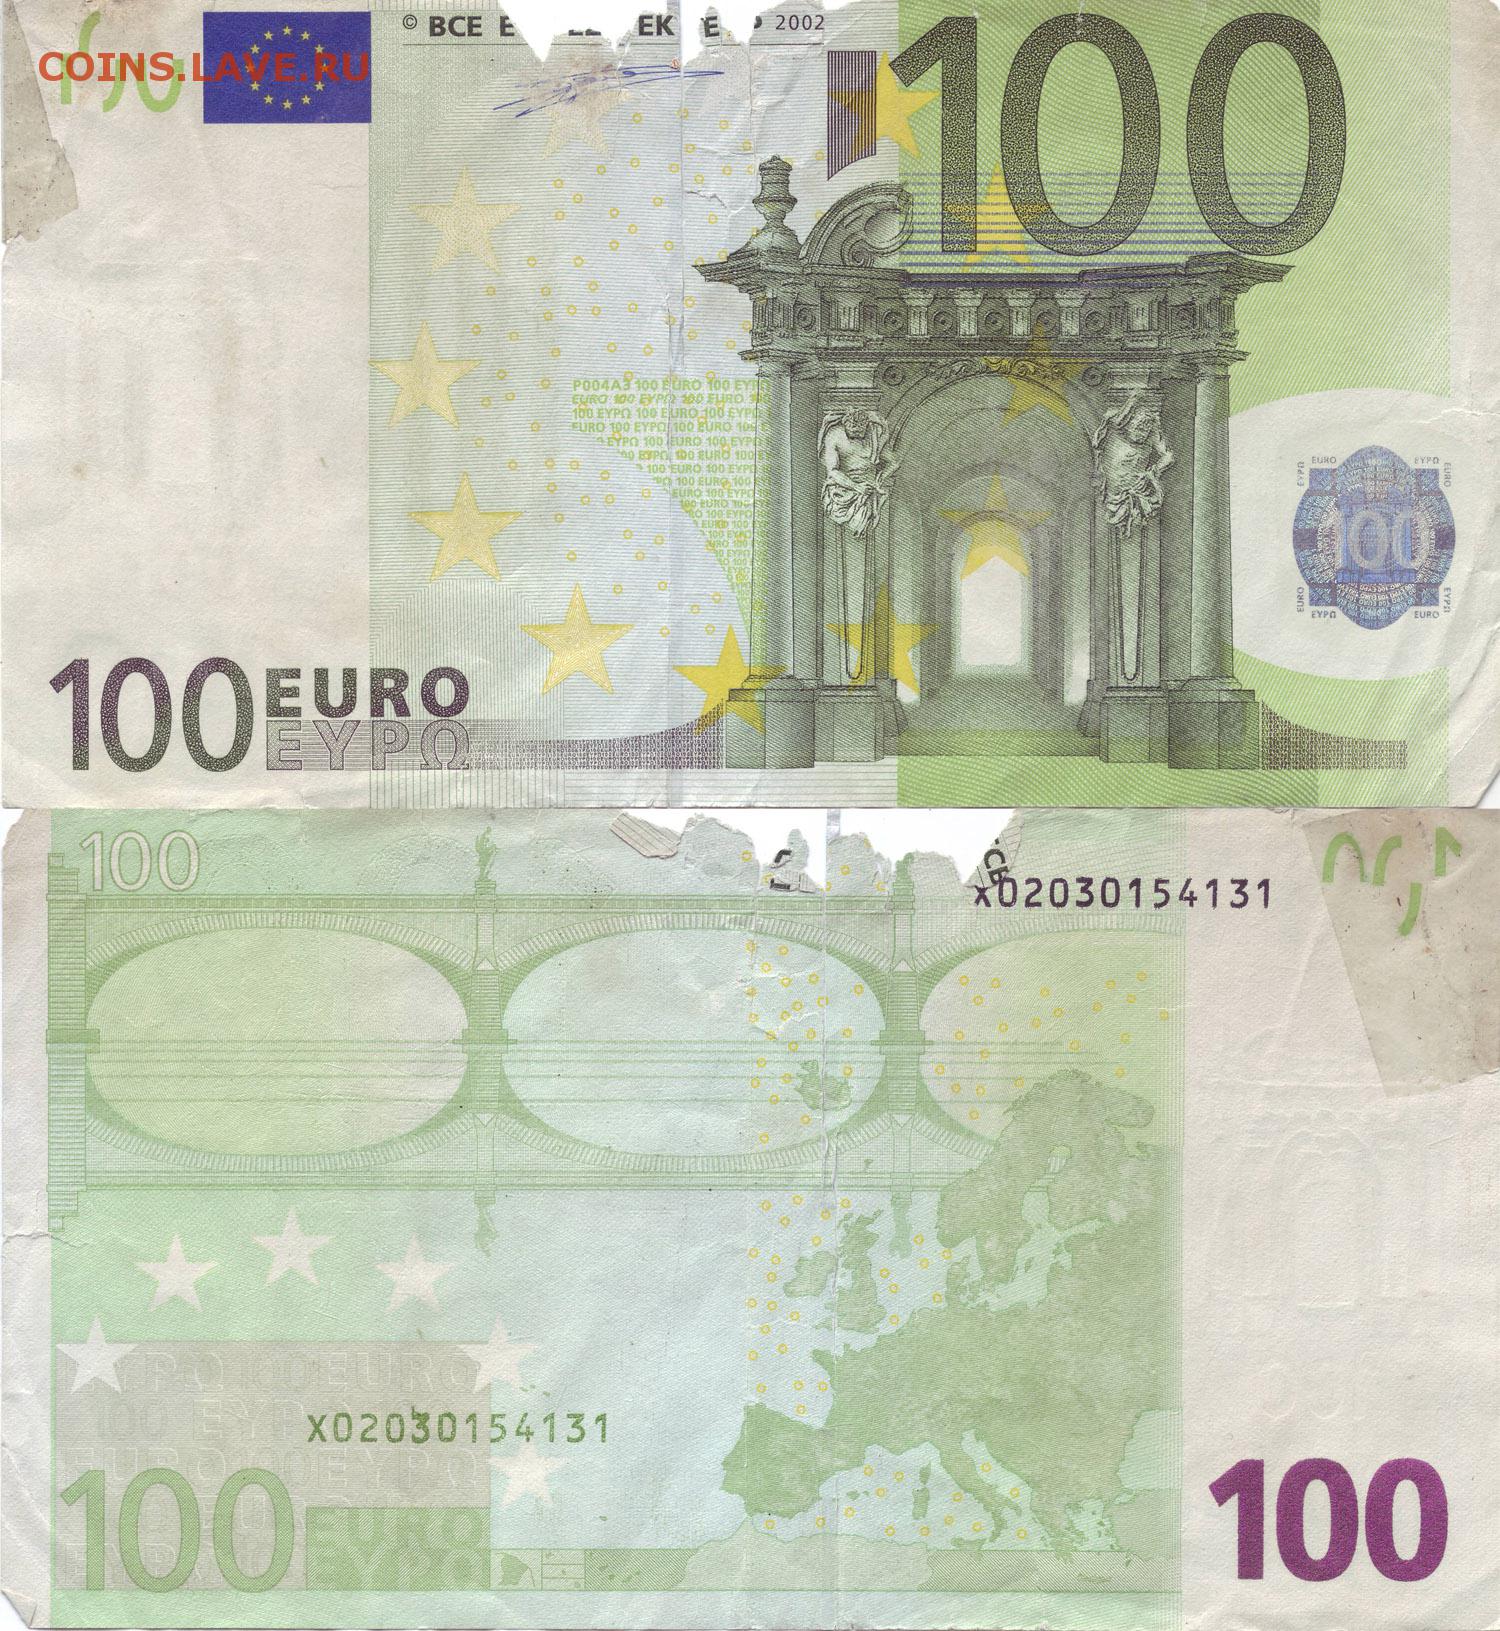 Евро старые купюры. 100 Евро купюра. Купюра 100 евро 2002. Как выглядит 100 евро купюра. Как выглядит купюра 100 евро 2002 года.